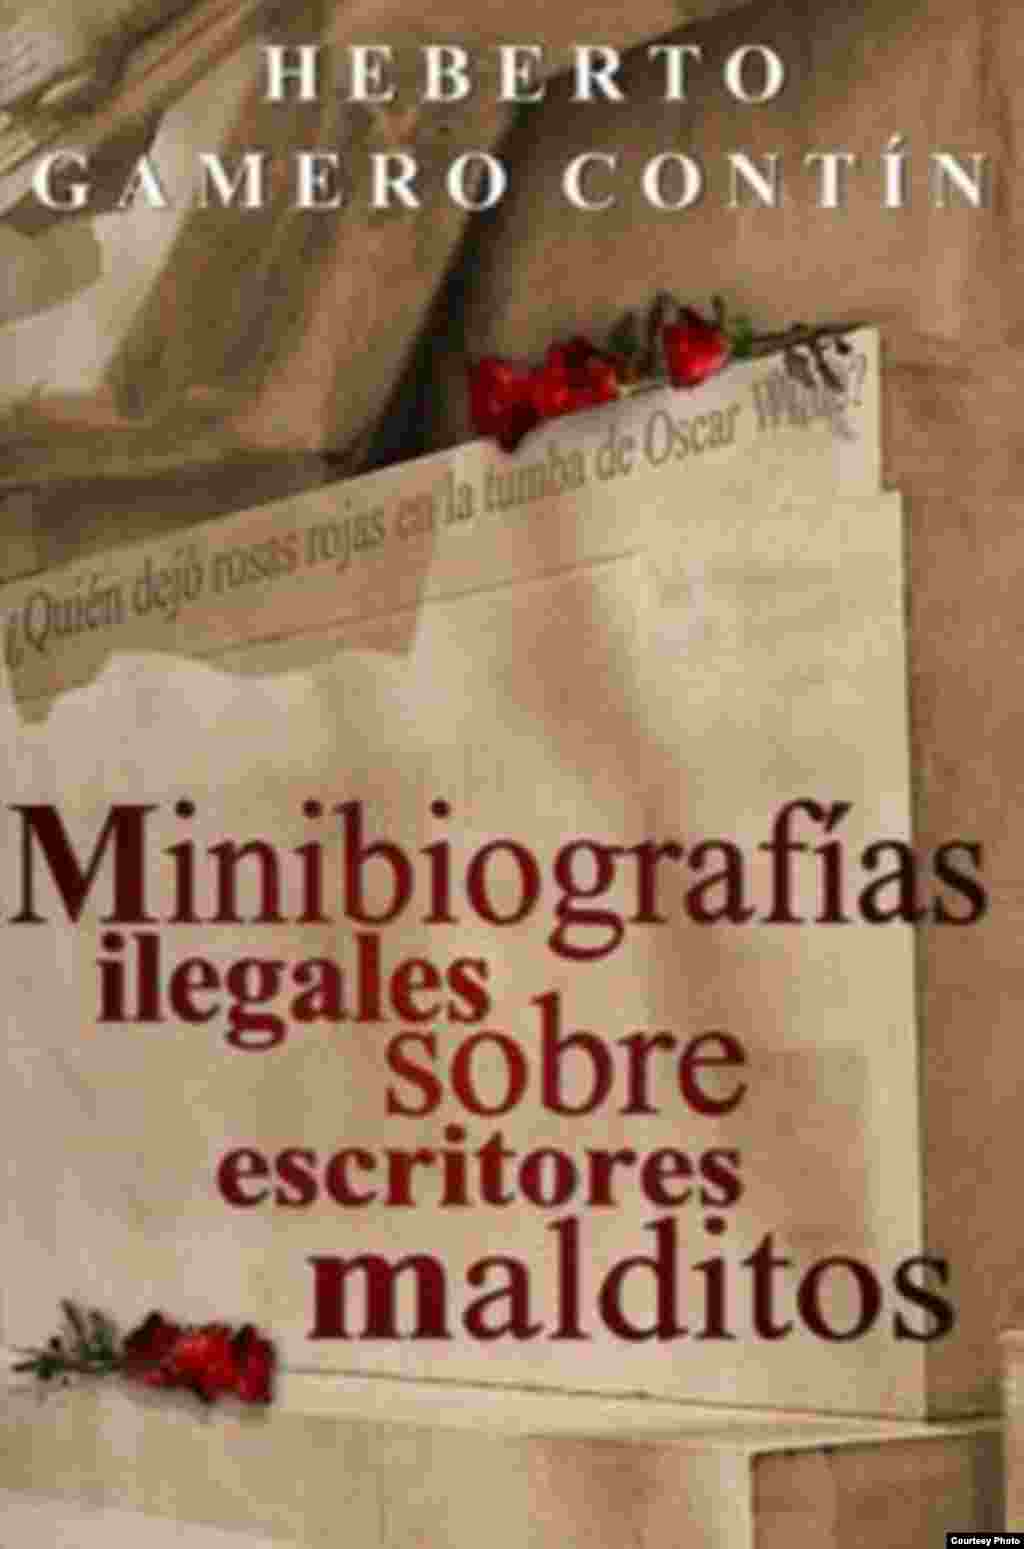 Minibiografías ilegales sobre pintores malditos (Portada de Eernesto Valdes).